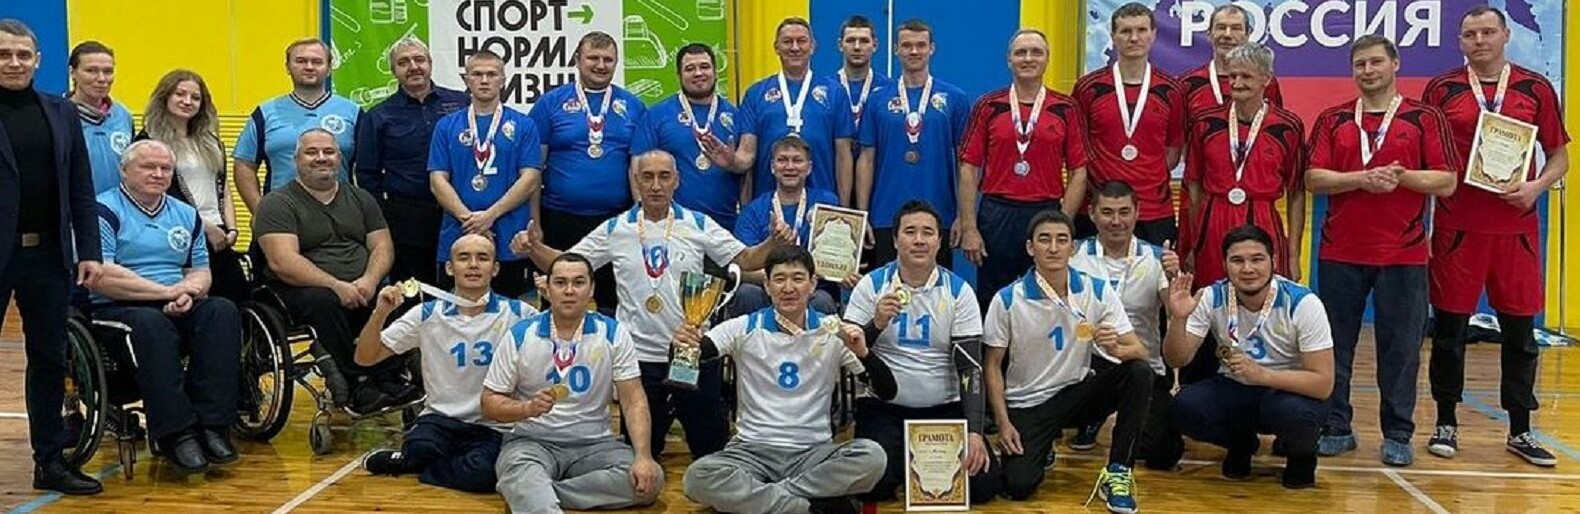 Мангистауские параспортсмены стали победителями международных соревнований по волейболу сидя